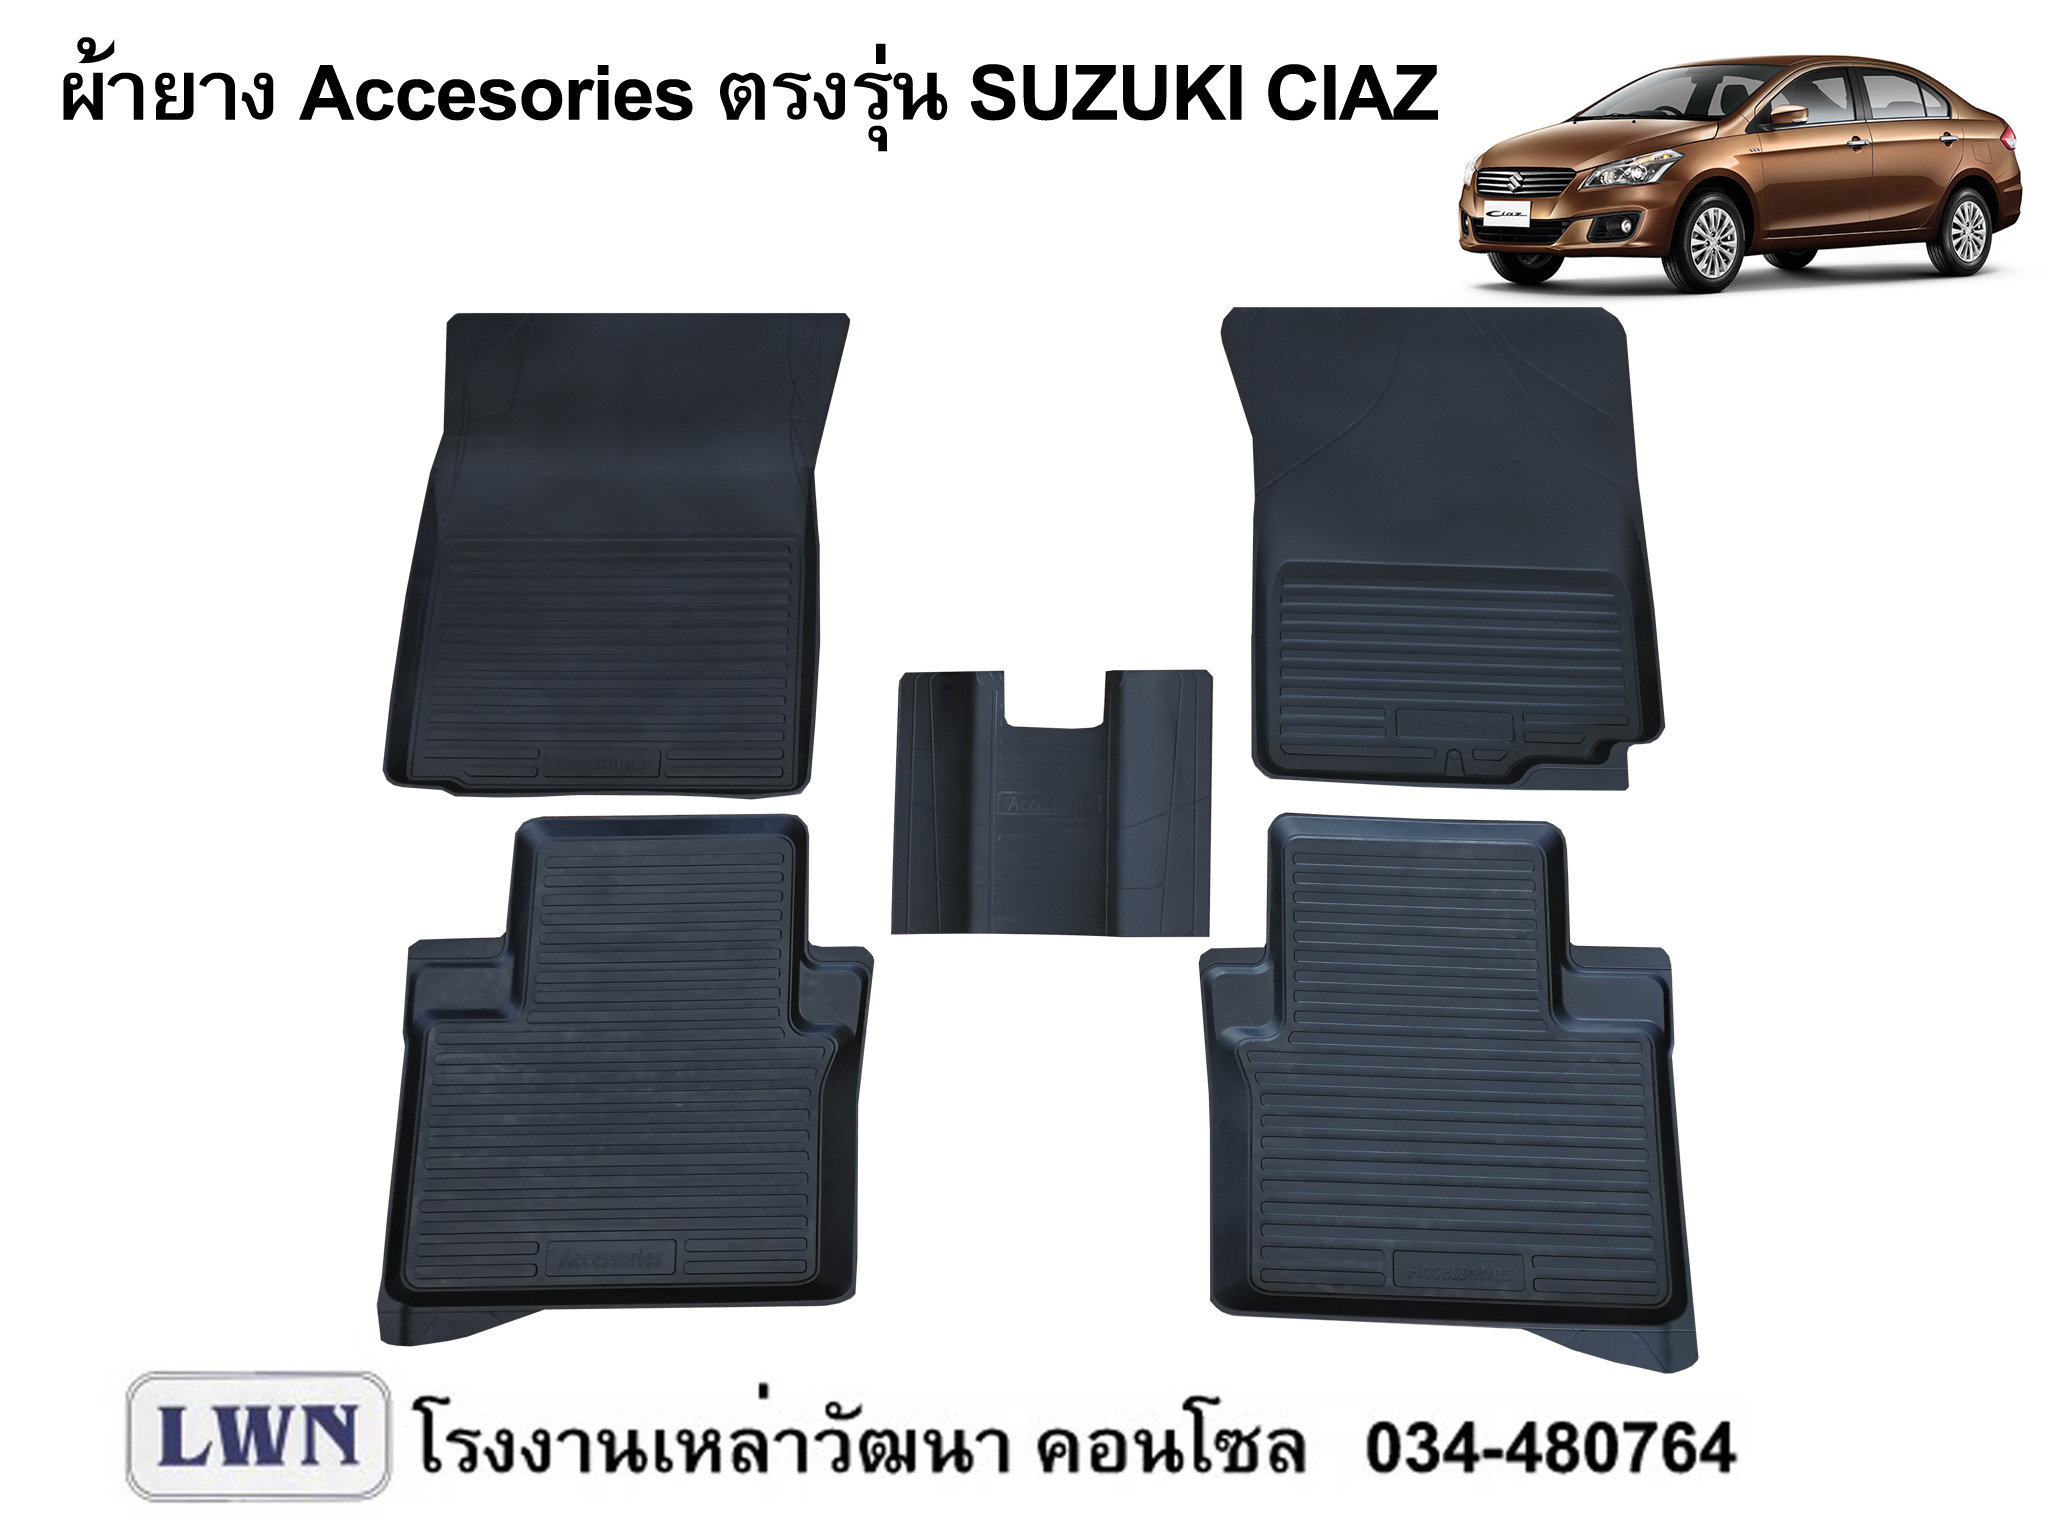 ผ้ายางปูพื้น Suzuki Ciaz